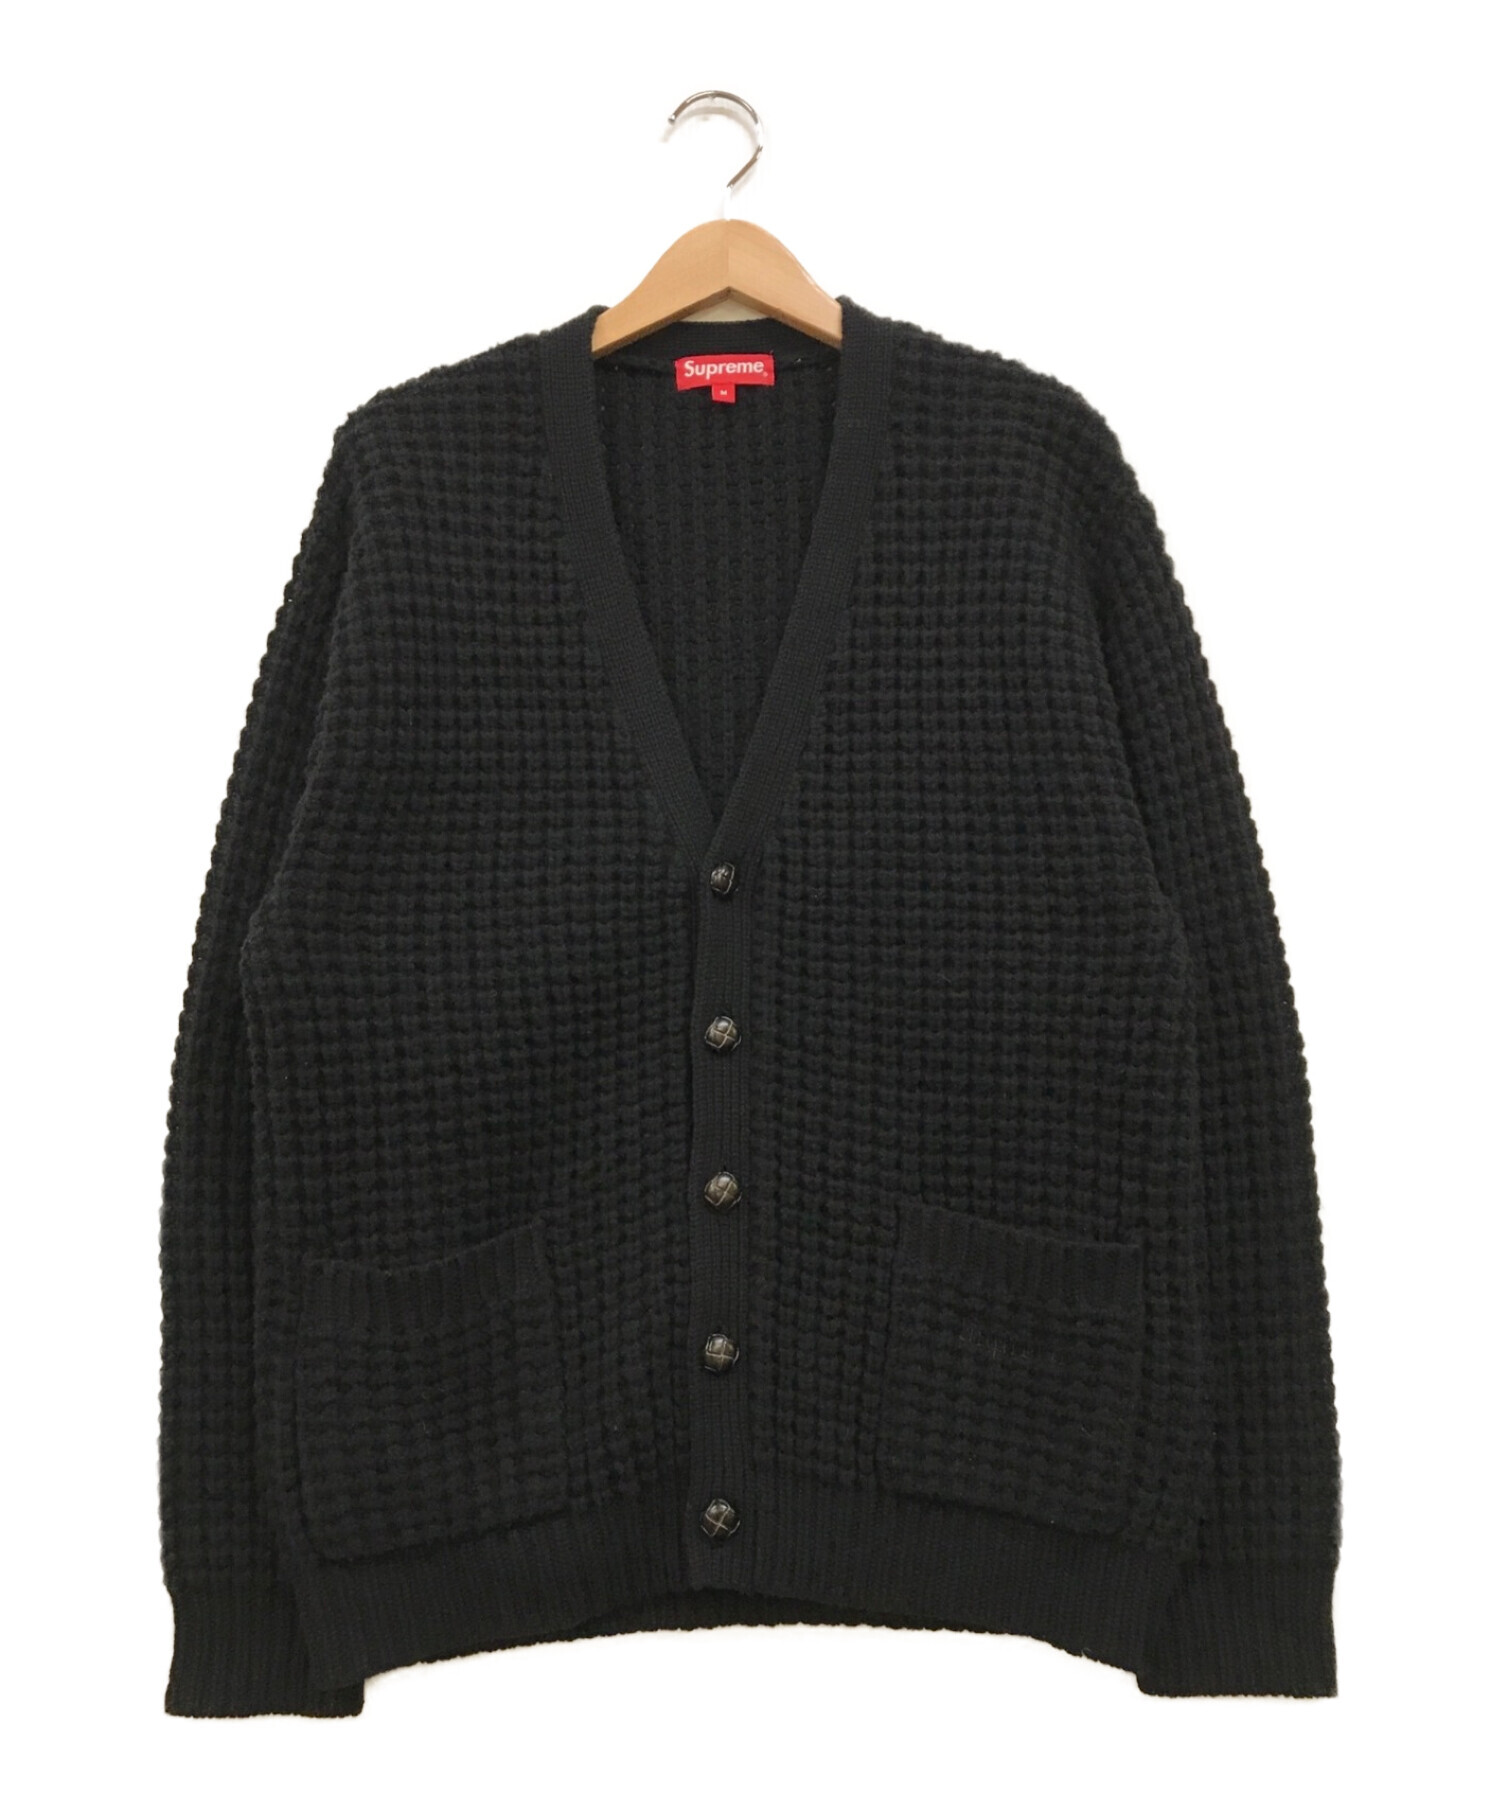 SUPREME (シュプリーム) waffle knit cardigan ブラック サイズ:M